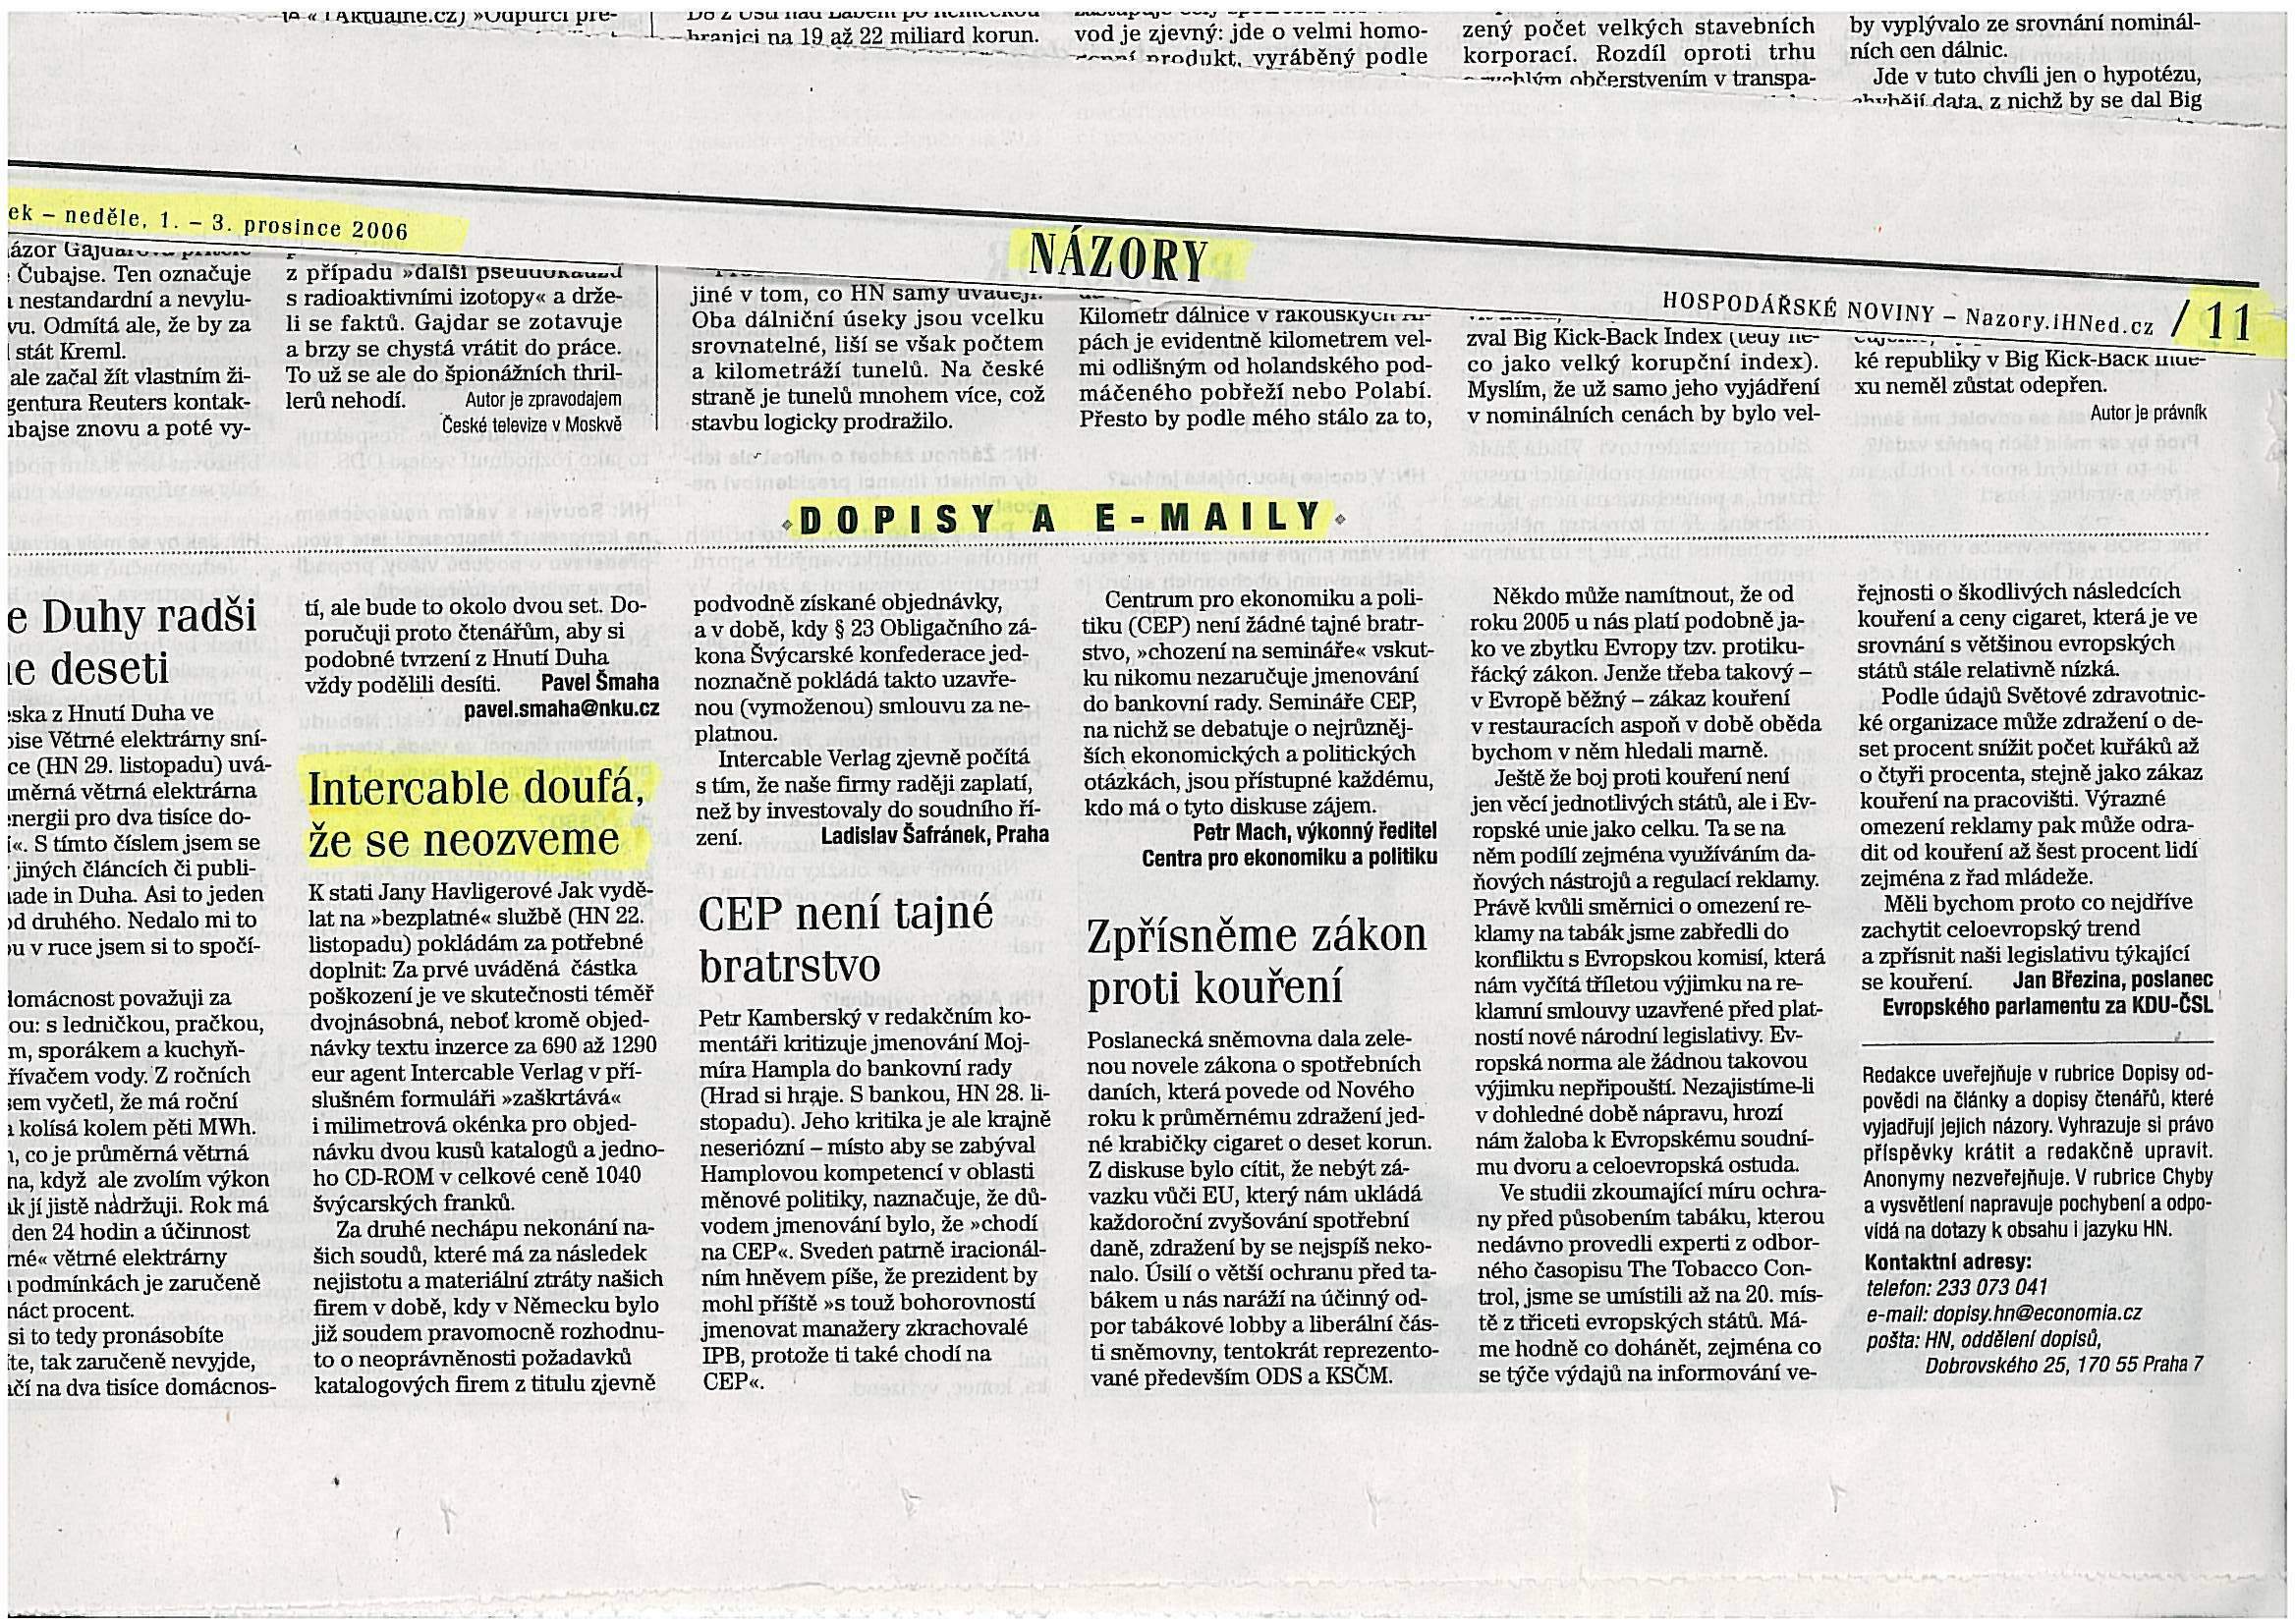 Hospodářské noviny 1.12.2006.jpg